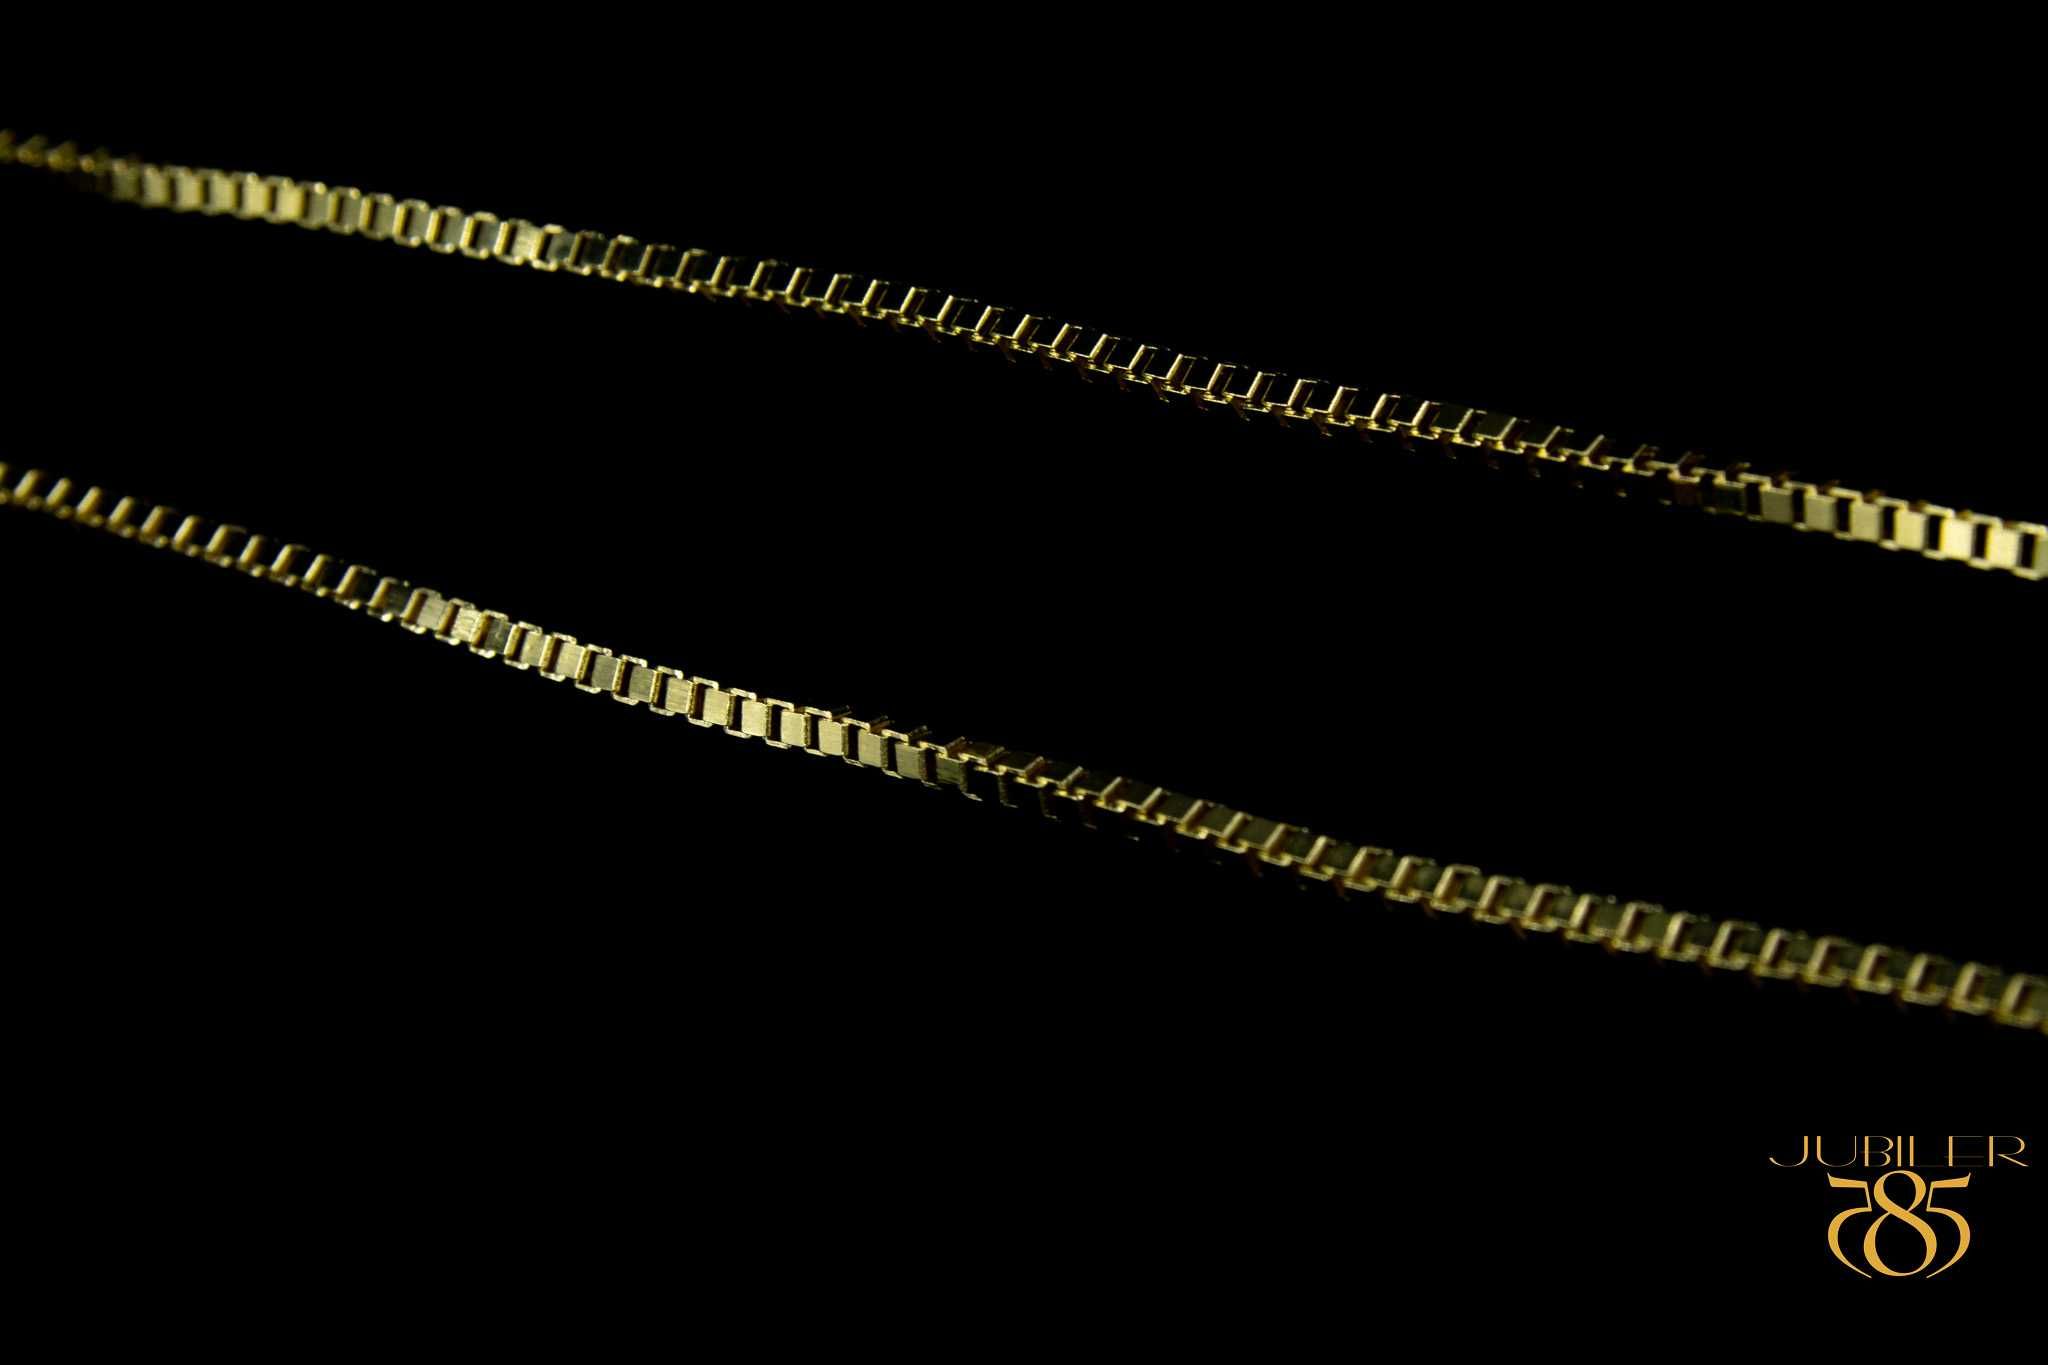 Złoty łańcuszek Złoto 14K 585 6,91g Splot Kostka Nowe